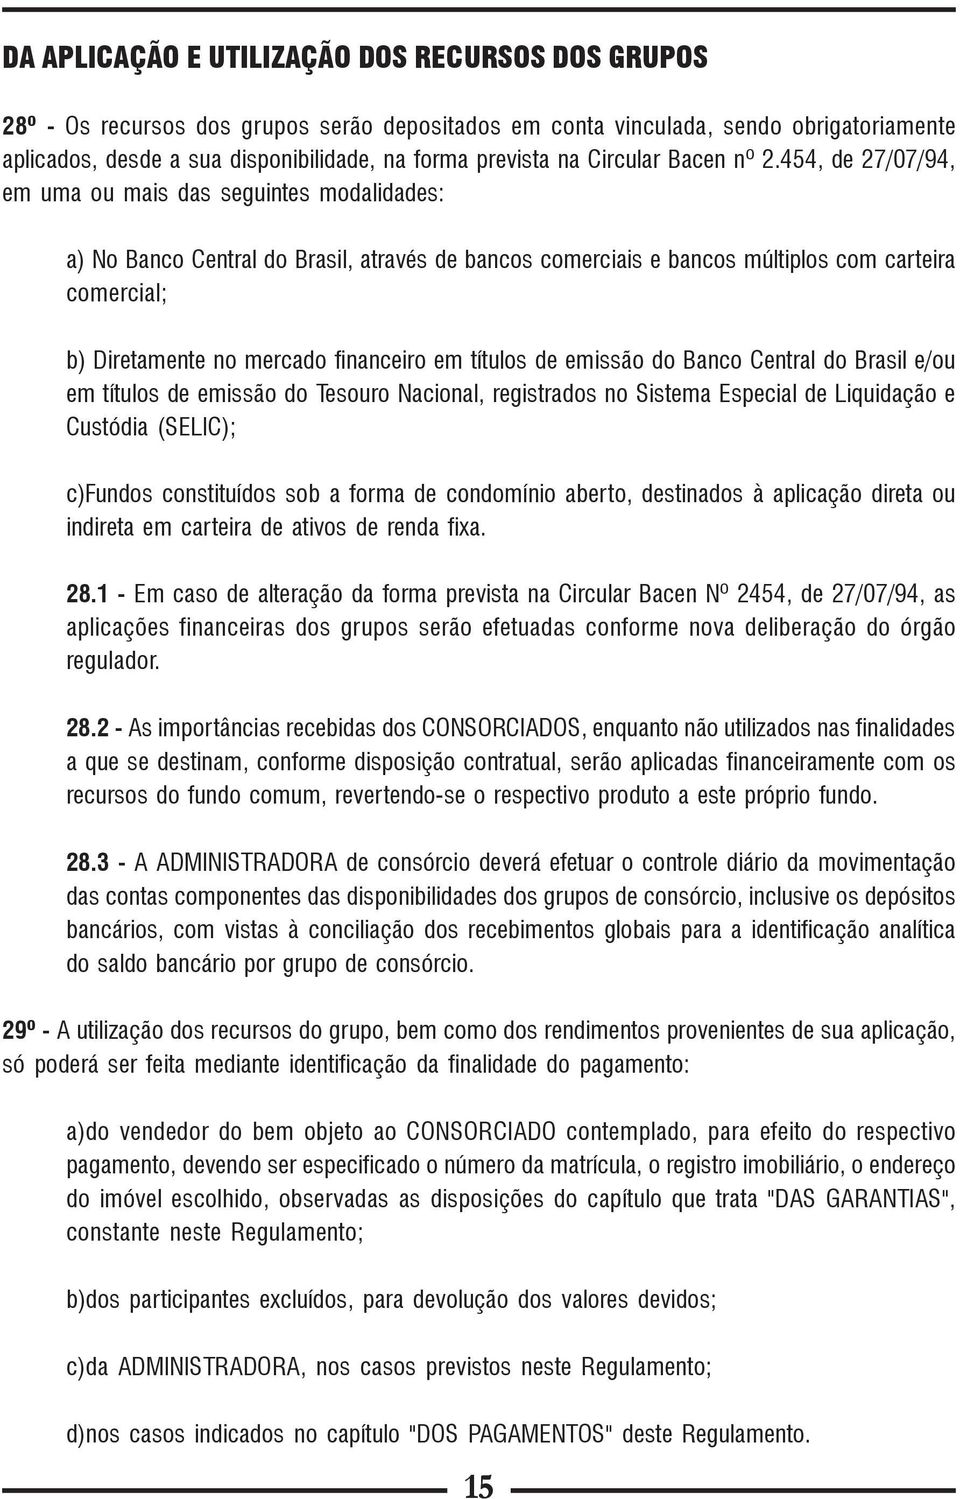 454, de 27/07/94, em uma ou mais das seguintes modalidades: a) No Banco Central do Brasil, através de bancos comerciais e bancos múltiplos com carteira comercial; b) Diretamente no mercado financeiro